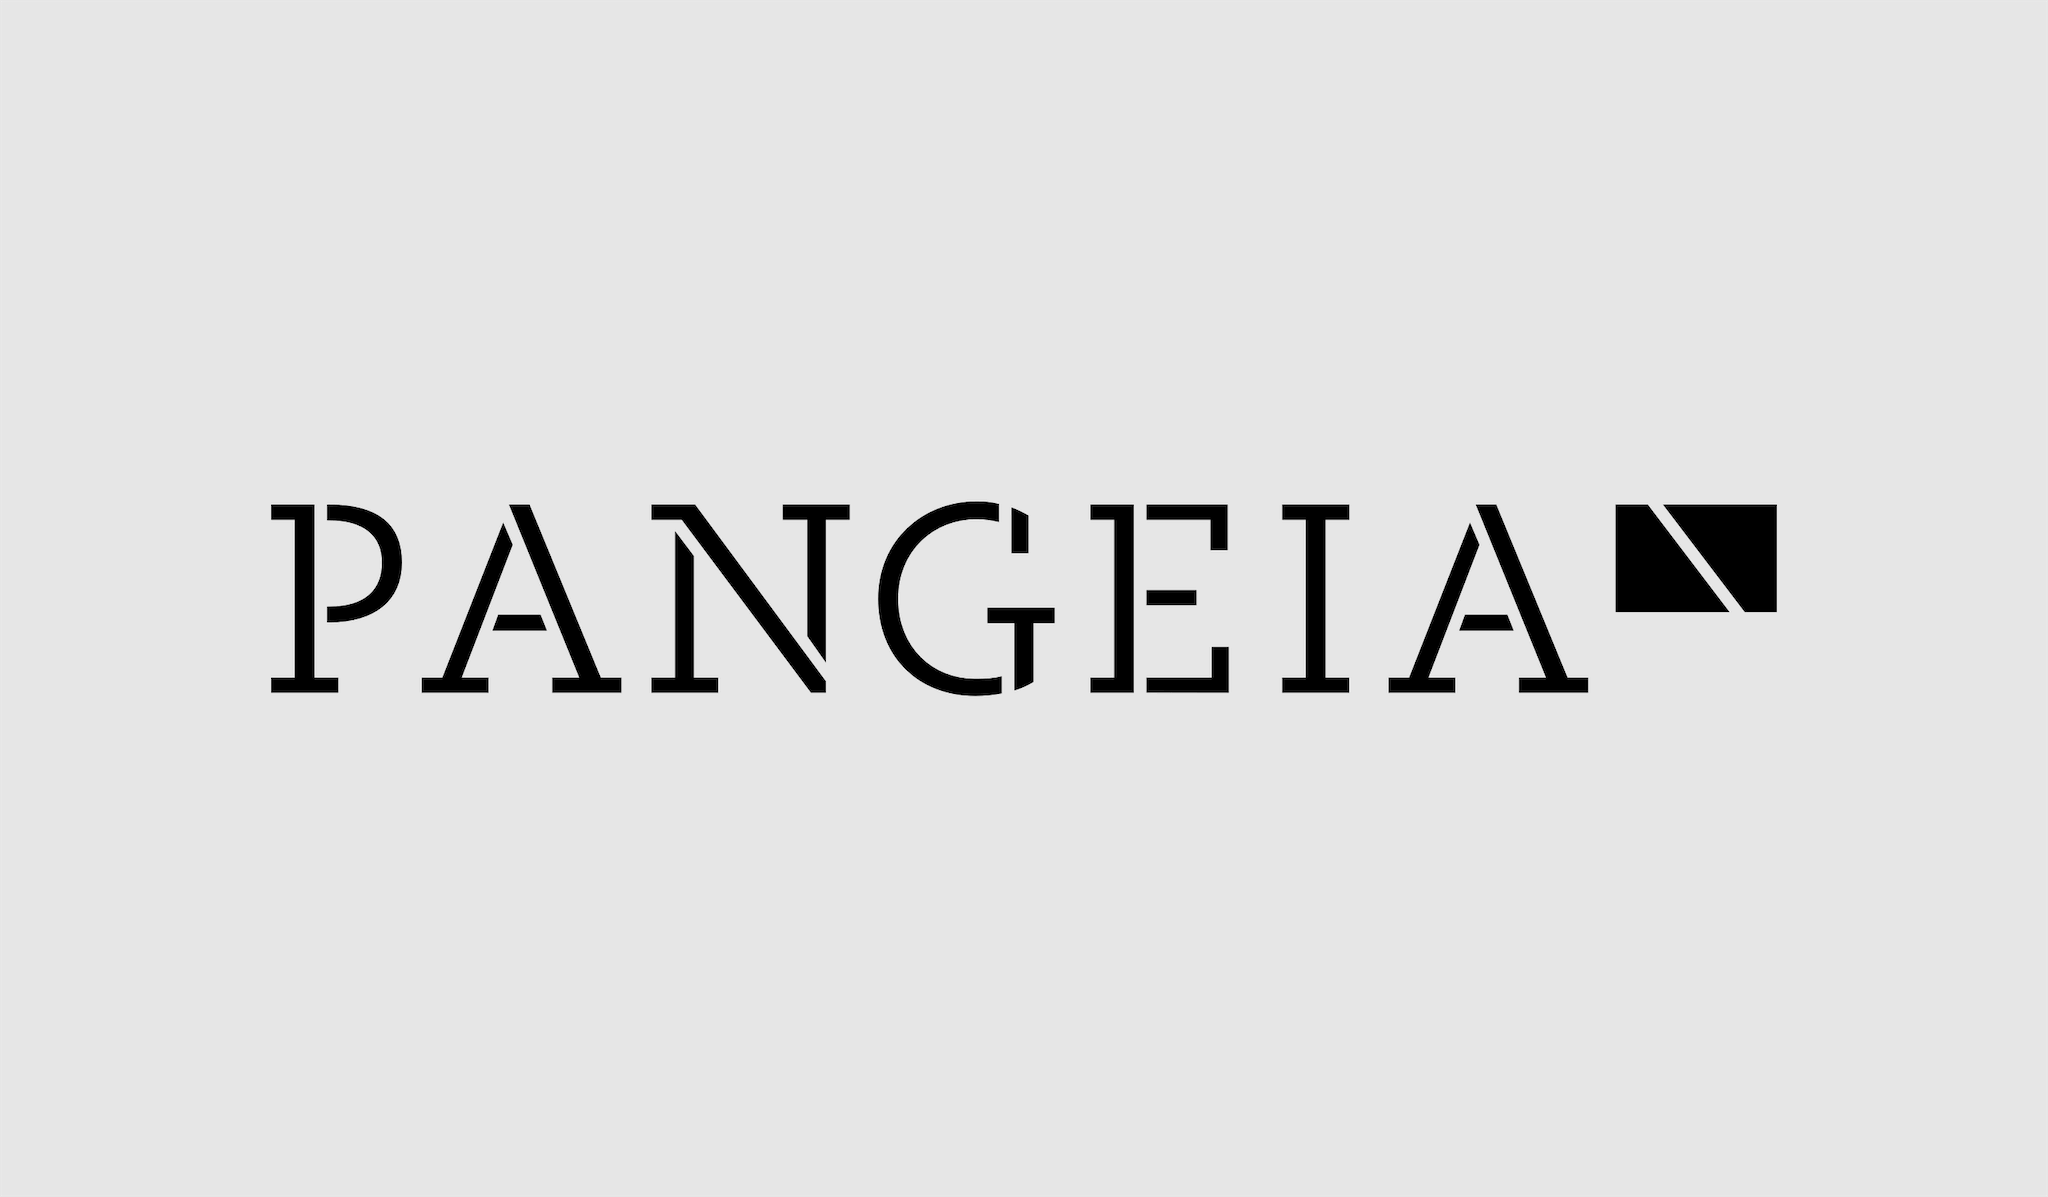 Logotipo composto pelas palavras "PANGEIA" e uma figura geométrica rectangular no canto superior direito.